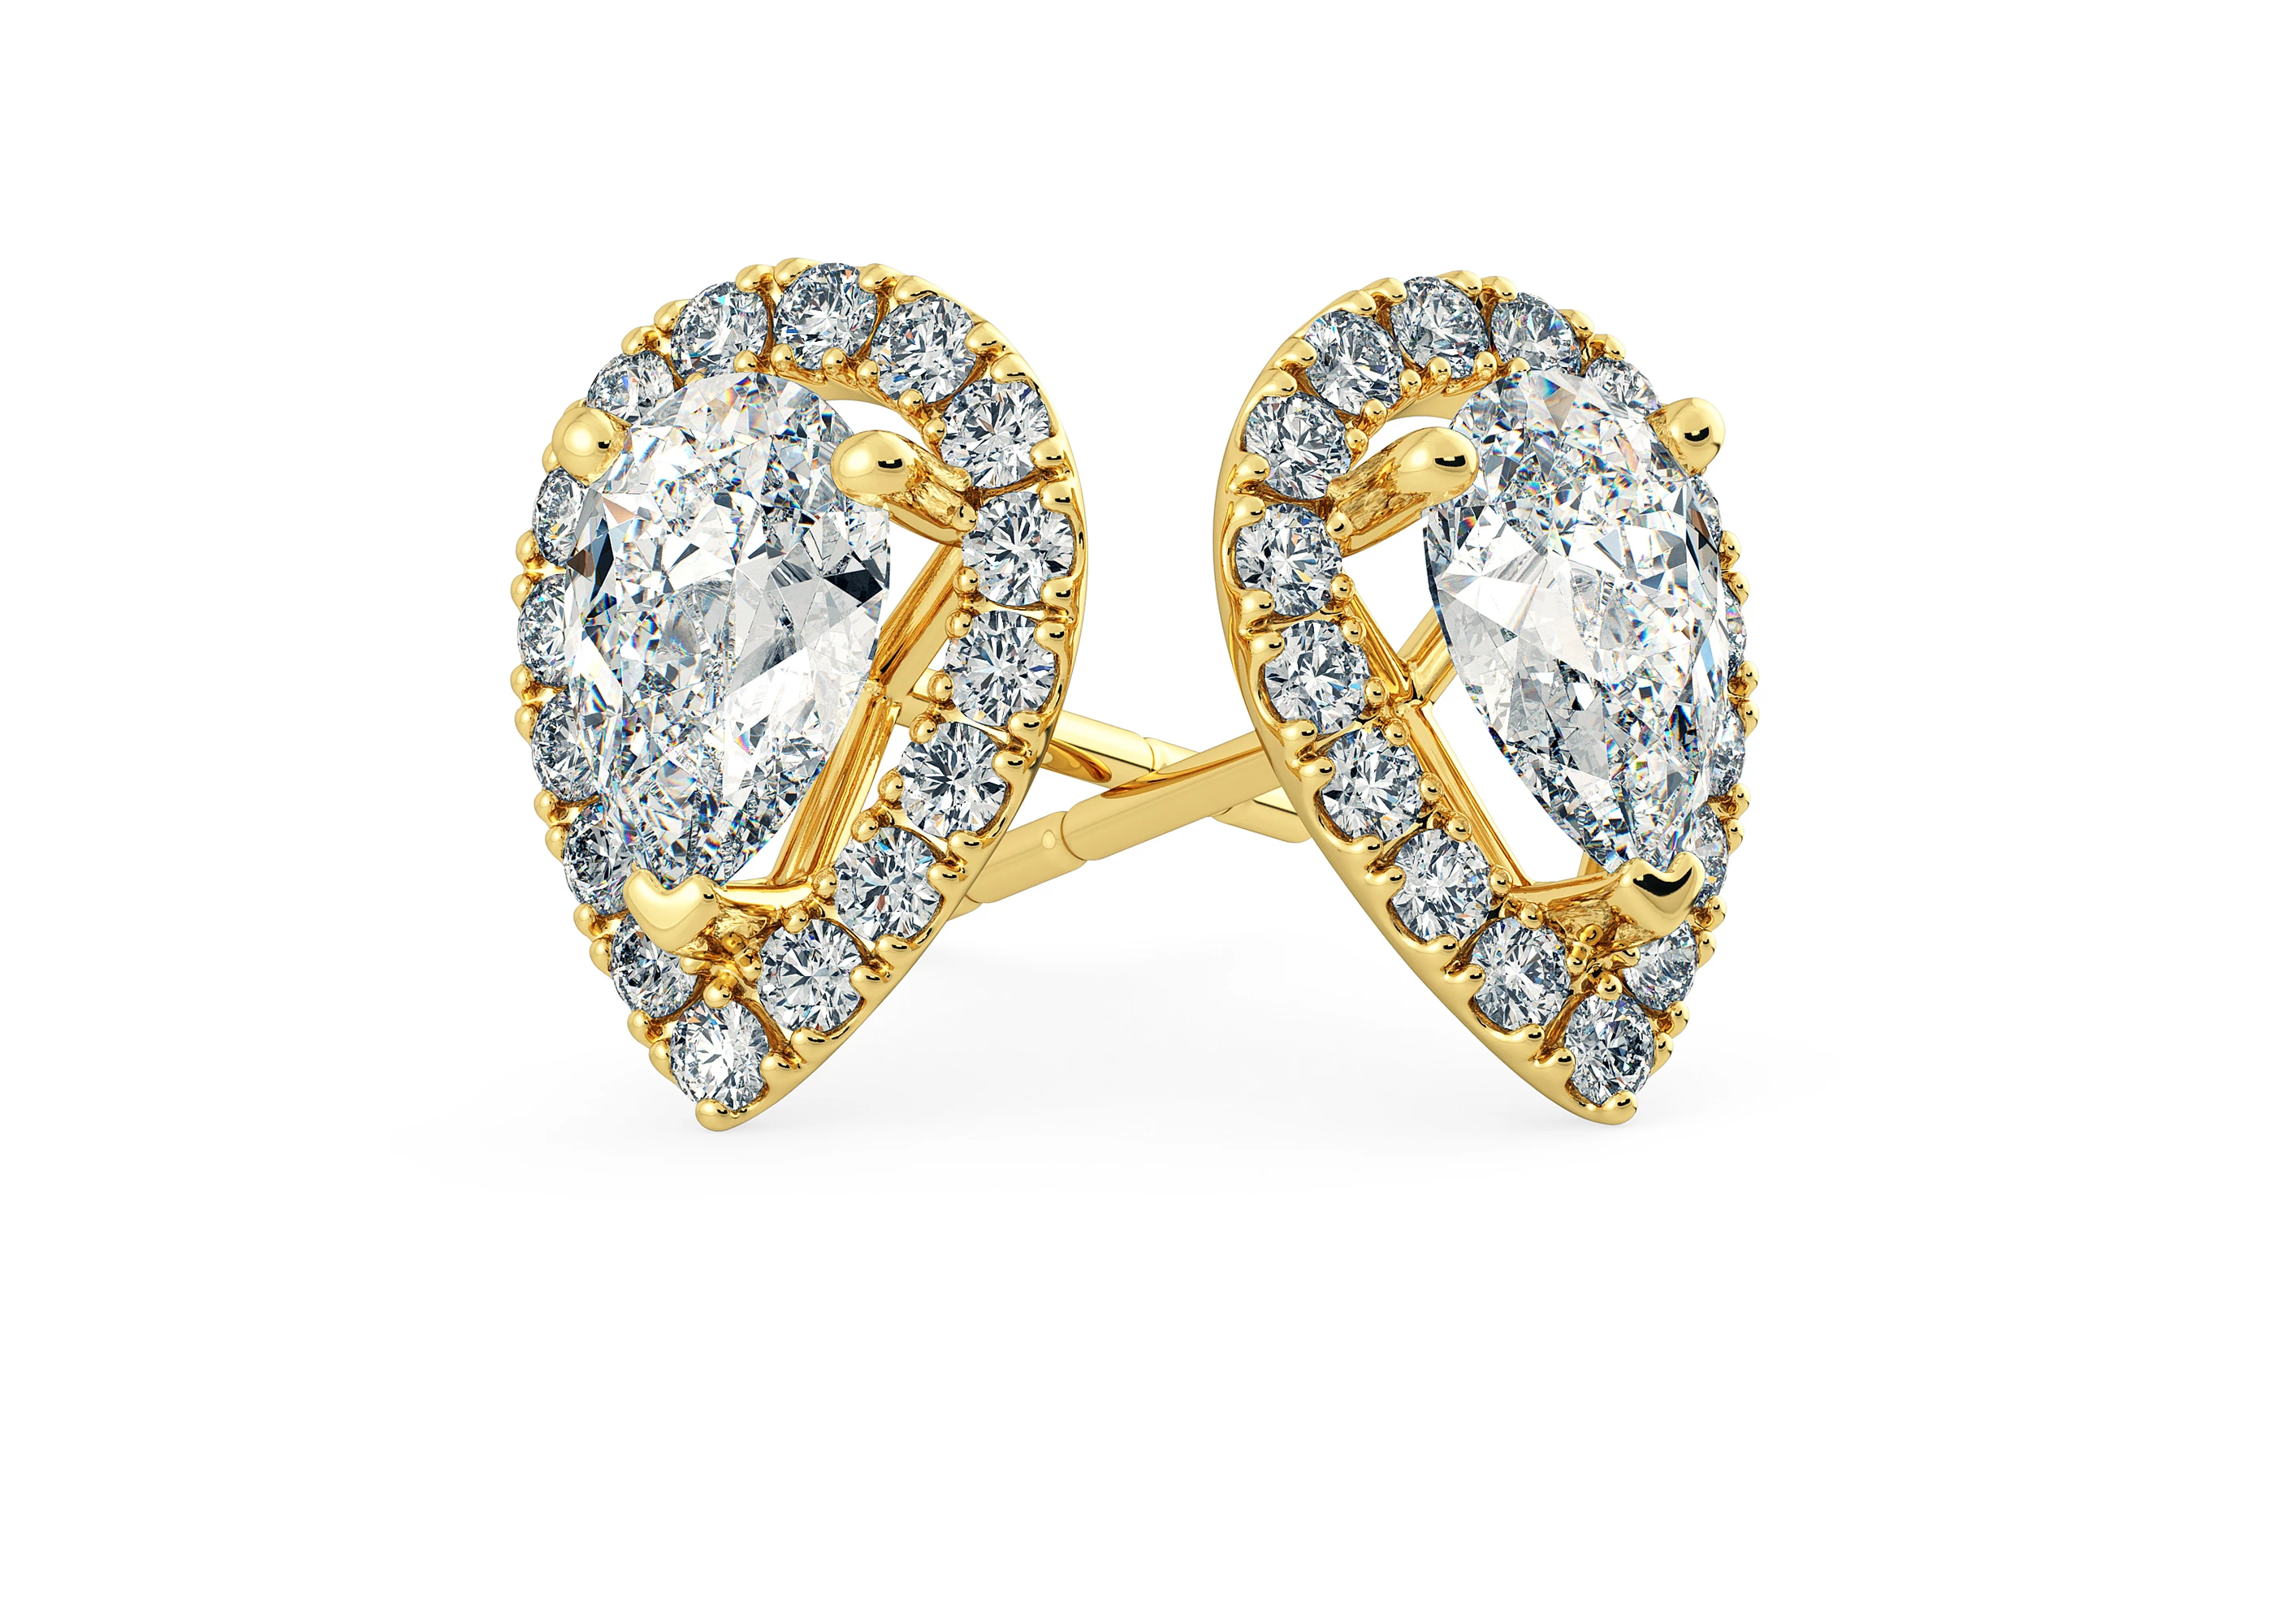 Bijou Pear Diamond Stud Earrings in 18K Yellow Gold with Alpha Backs